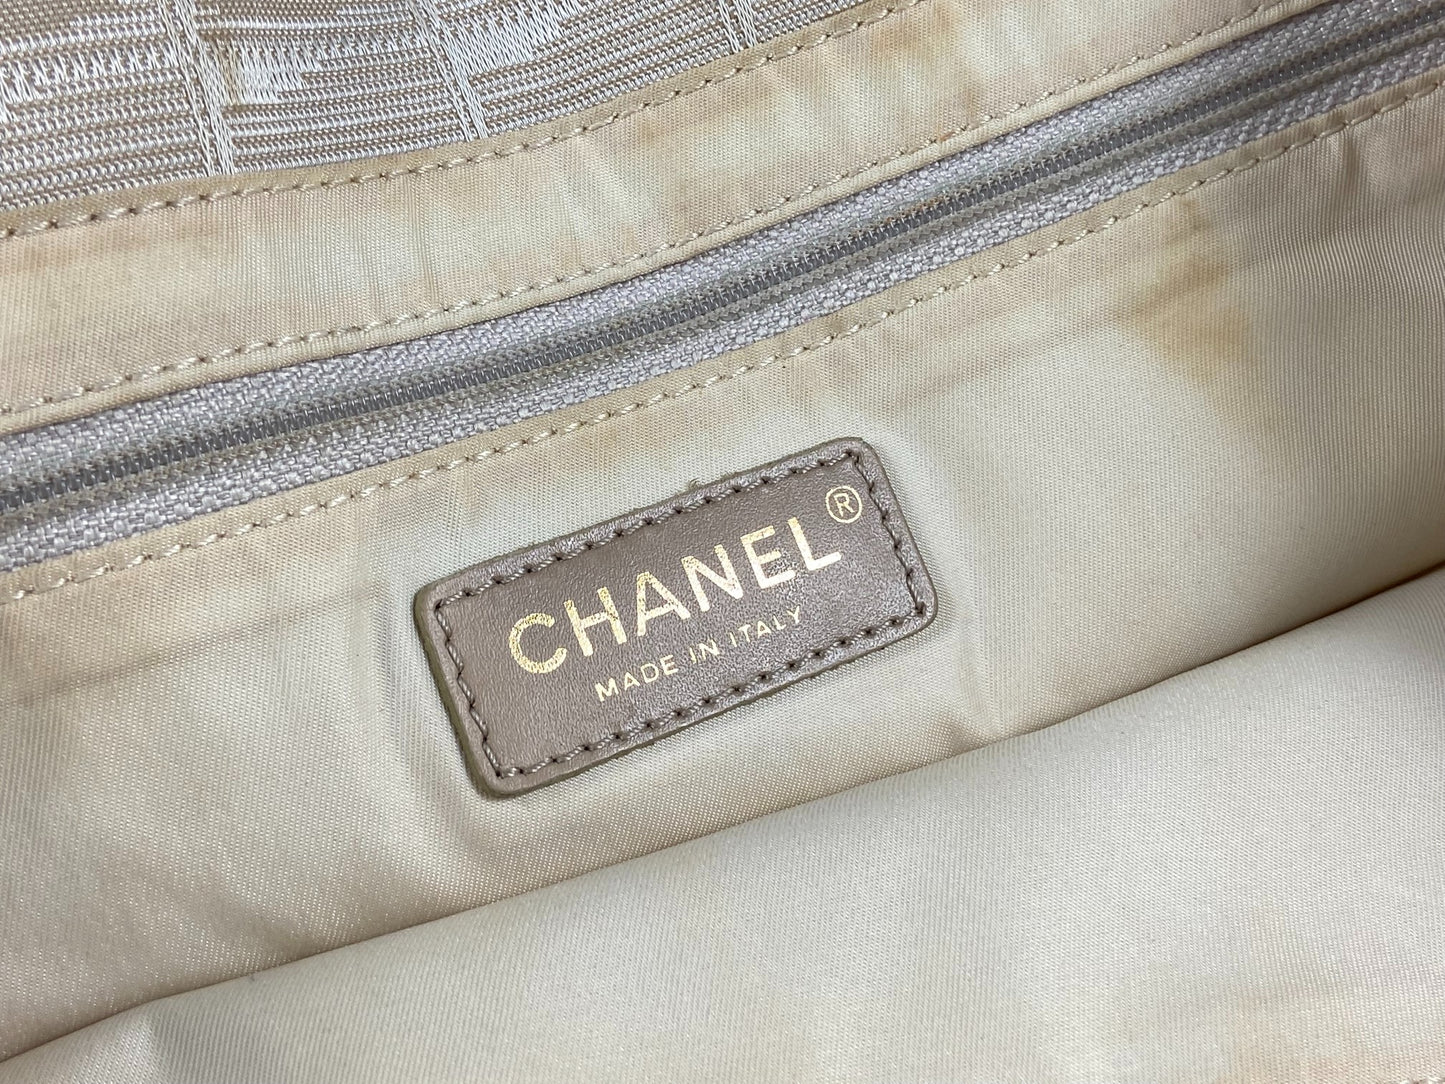 Chanel Travel Line Hand / Shoulder Bag Beige